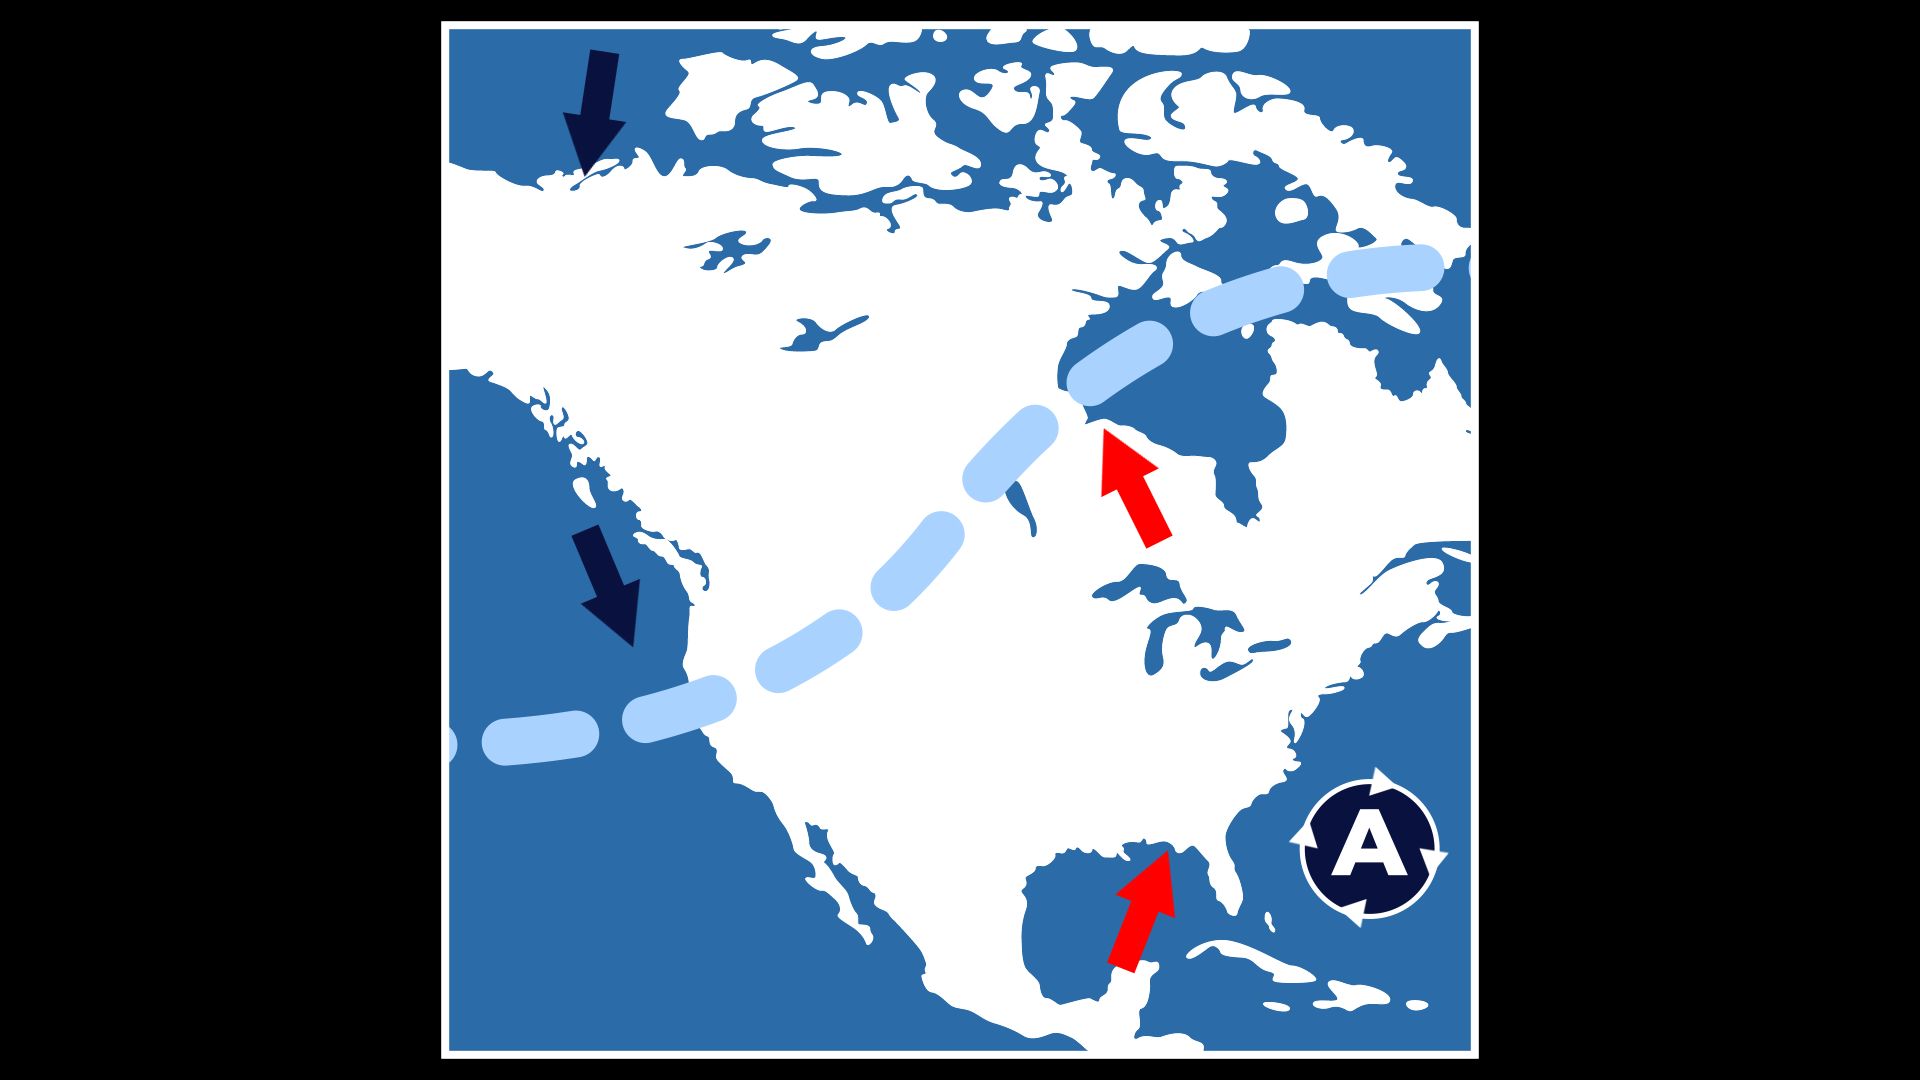 De l’air polaire plongeant sur l’ouest du Canada entraîne un flux de sud sur l’ouest du pays.